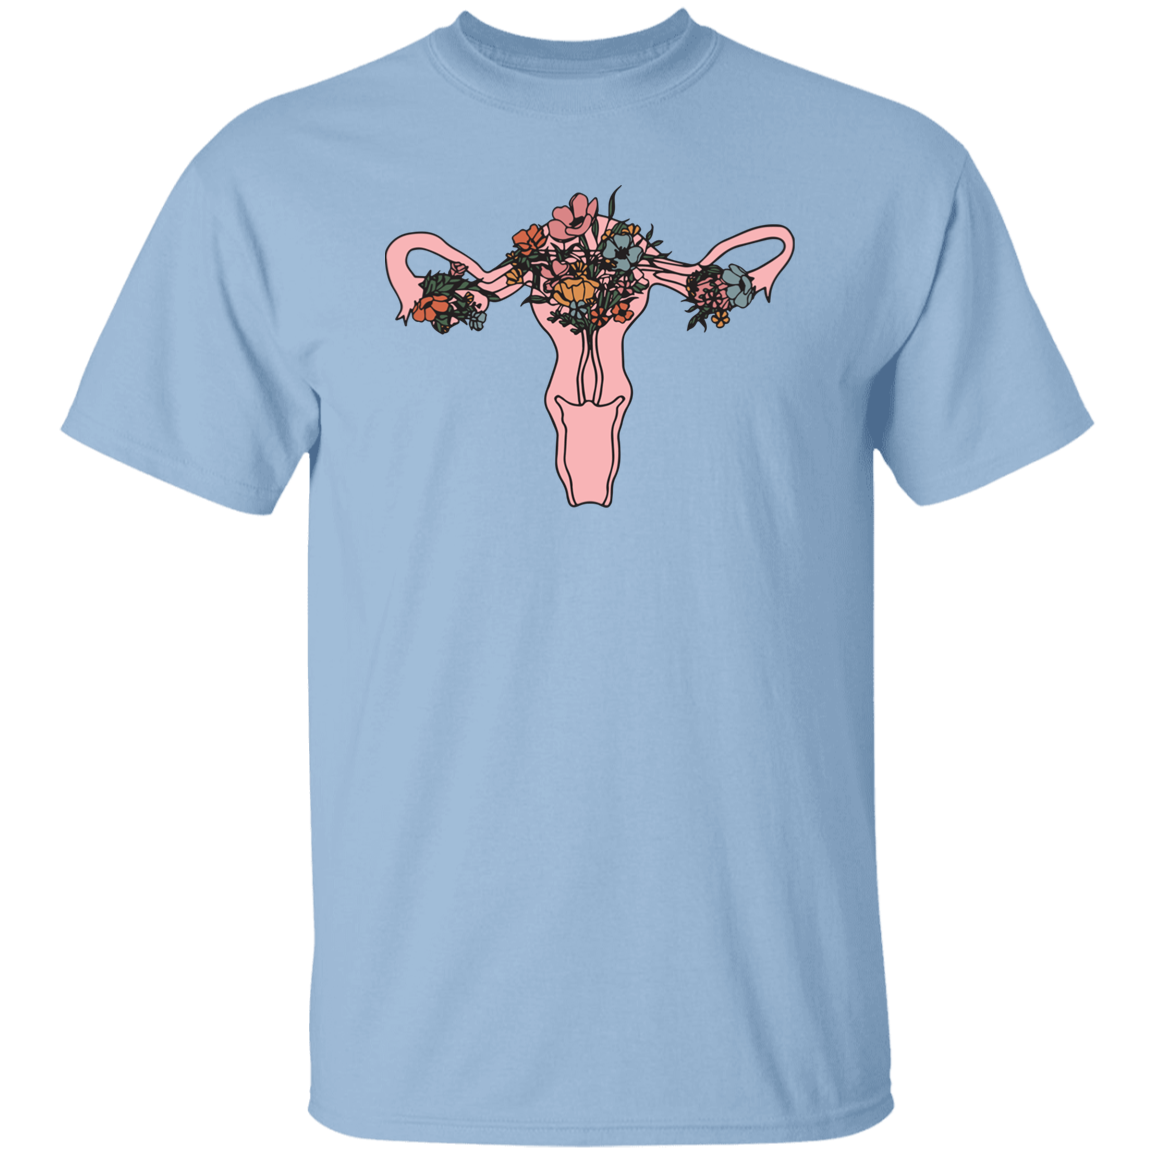 HPSP Anatomy Shirt, Floral Lover, Healing Shirt, Internists Shirt, Unisex Shirt. - Christian Art Bag